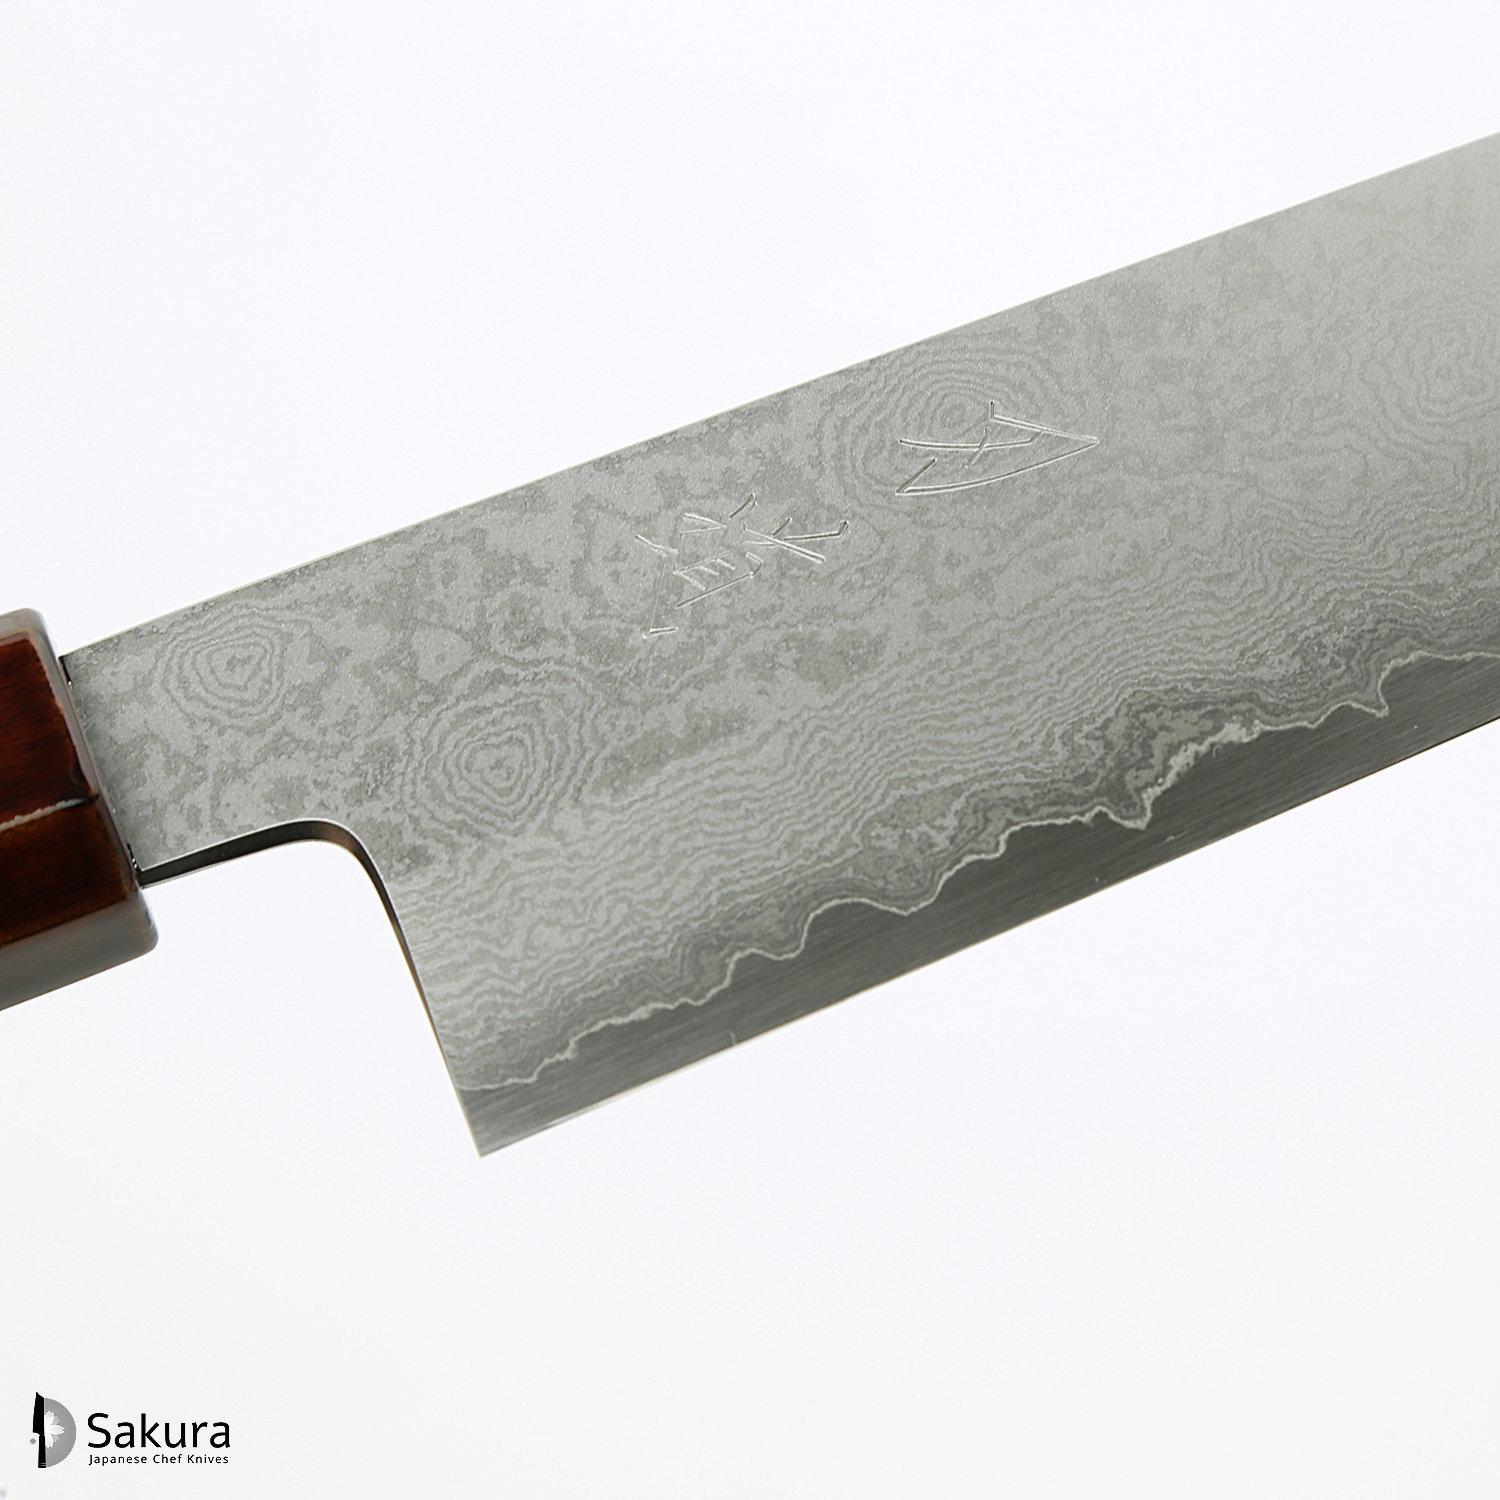 סכין רב-תכליתית סָנטוֹקוּ 180מ״מ מחושלת בעבודת יד 3 שכבות: פלדת פחמן יפנית מתקדמת מסוג Ginsan Silver#3 עטופה פלדת אל-חלד בגימור דמשק גימור דמשק האדו יפן